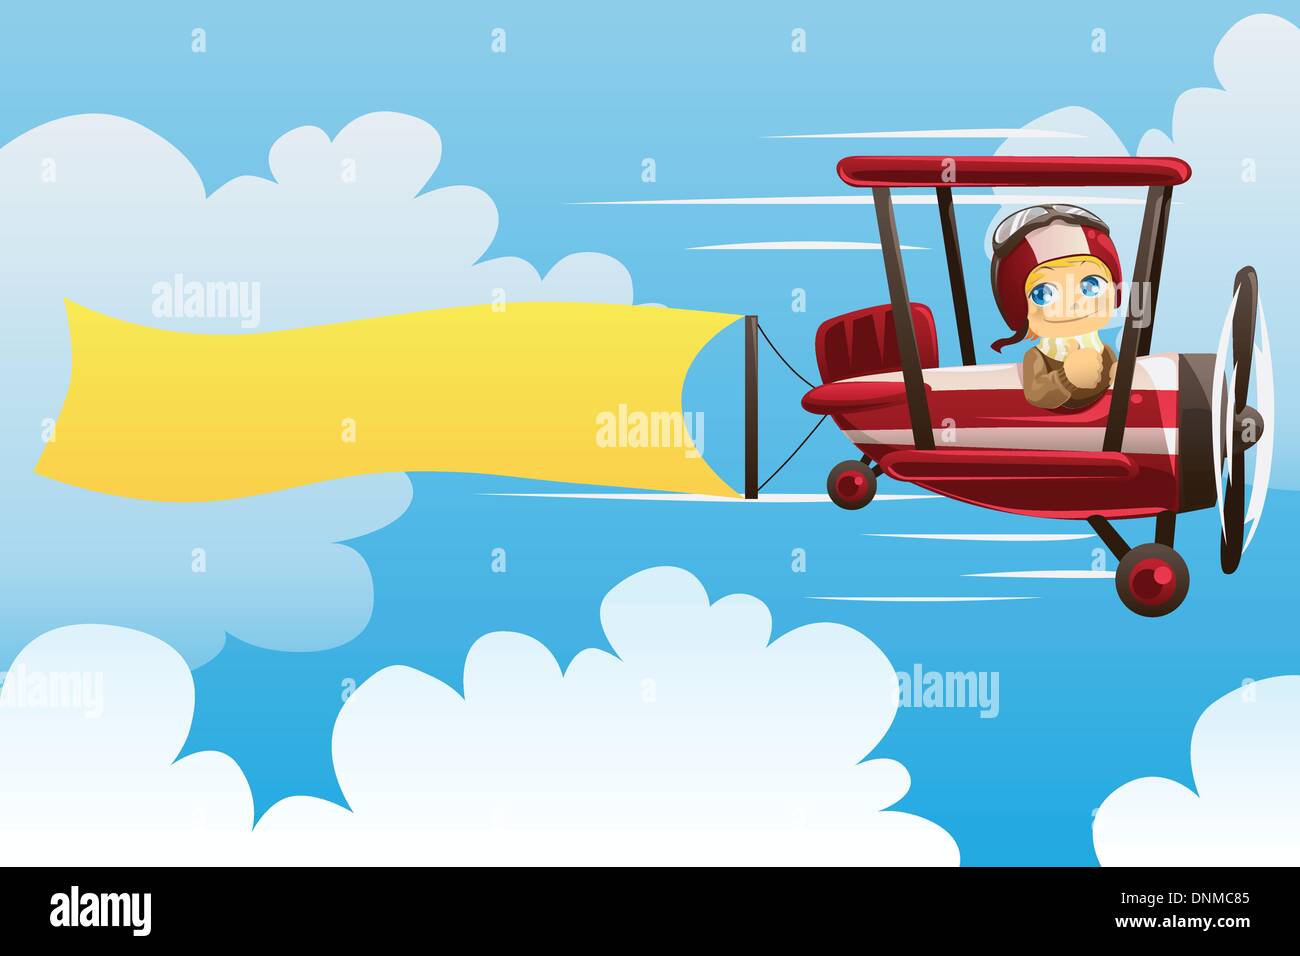 Un vecteur illustration d'un projet pilote sur un avion transportant une ouverture vierge Illustration de Vecteur